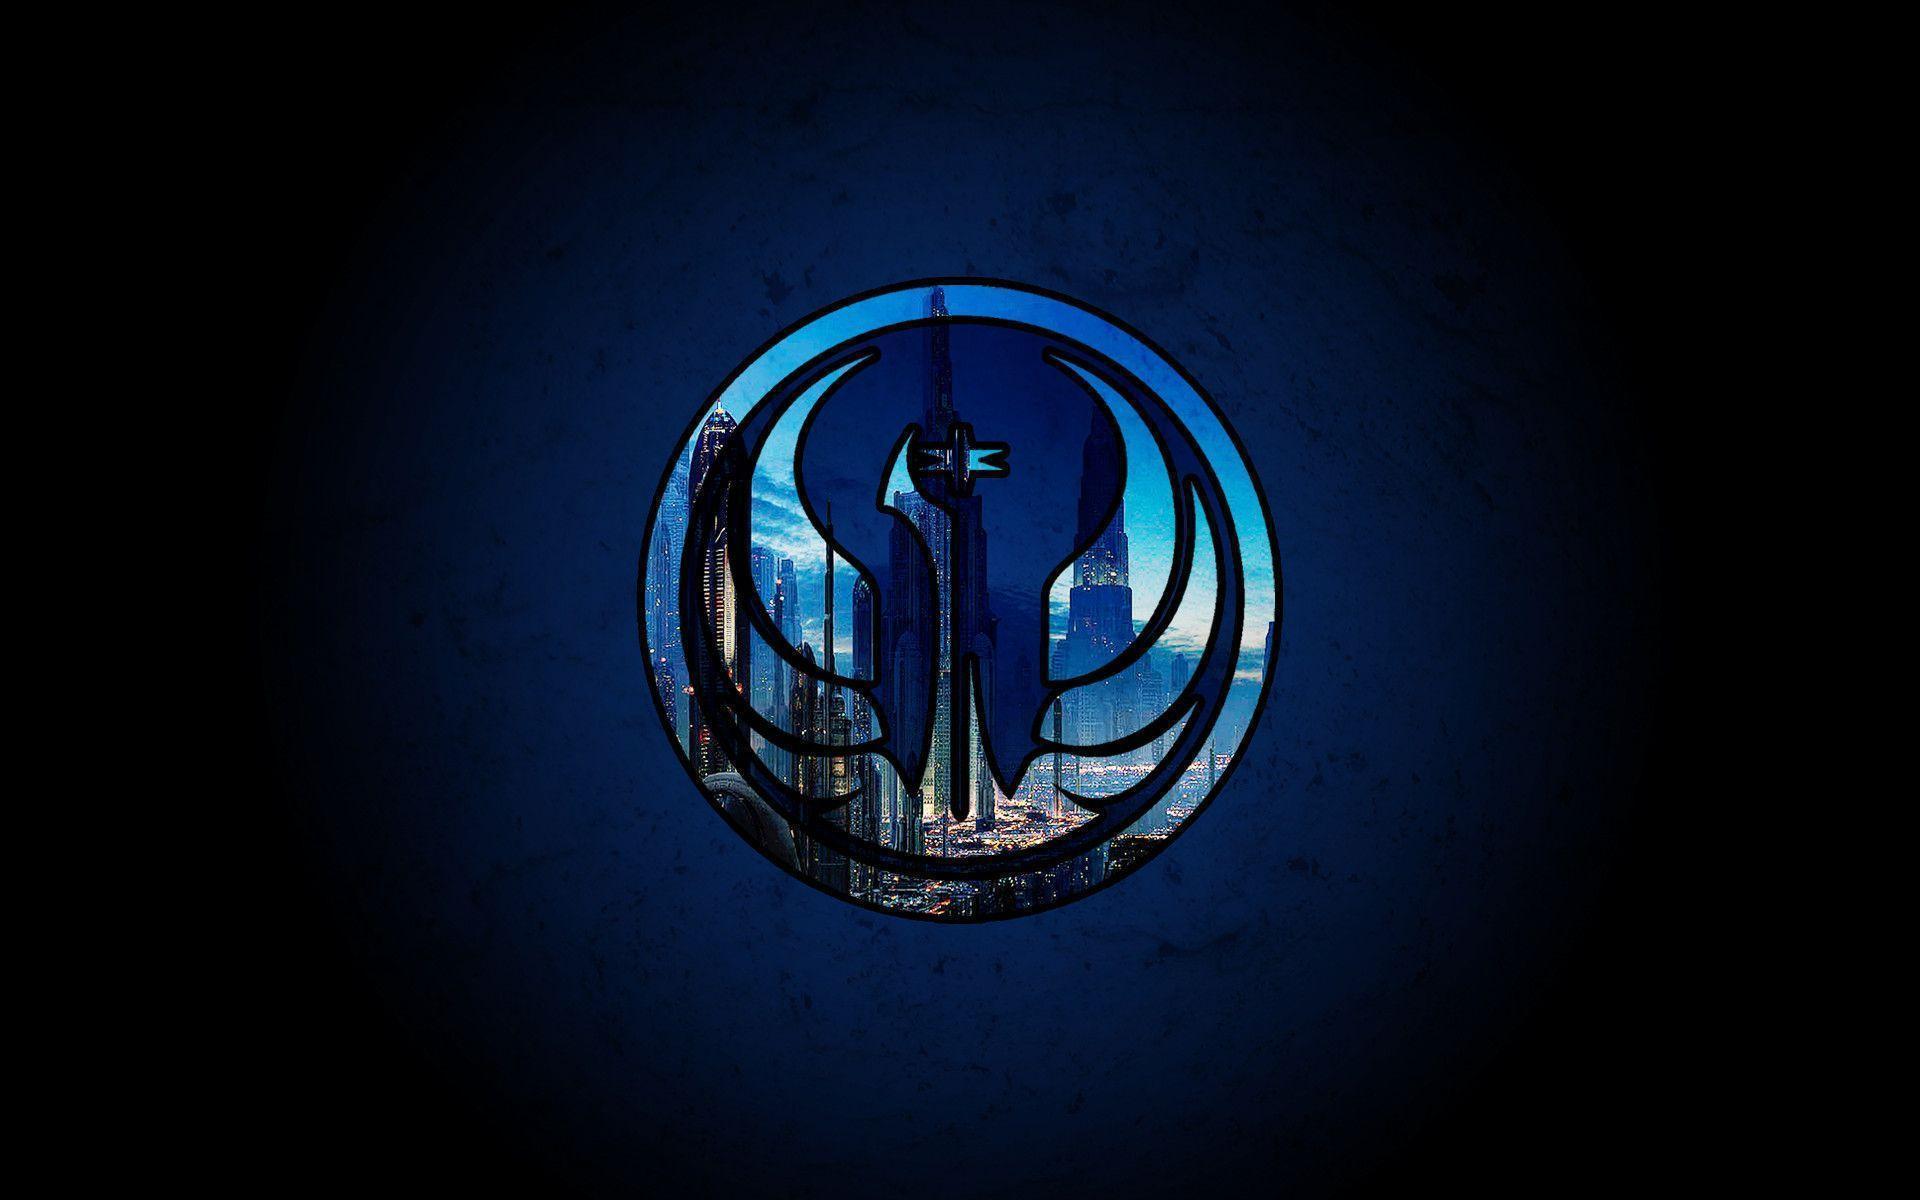 Sith Empire Logo wallpaper